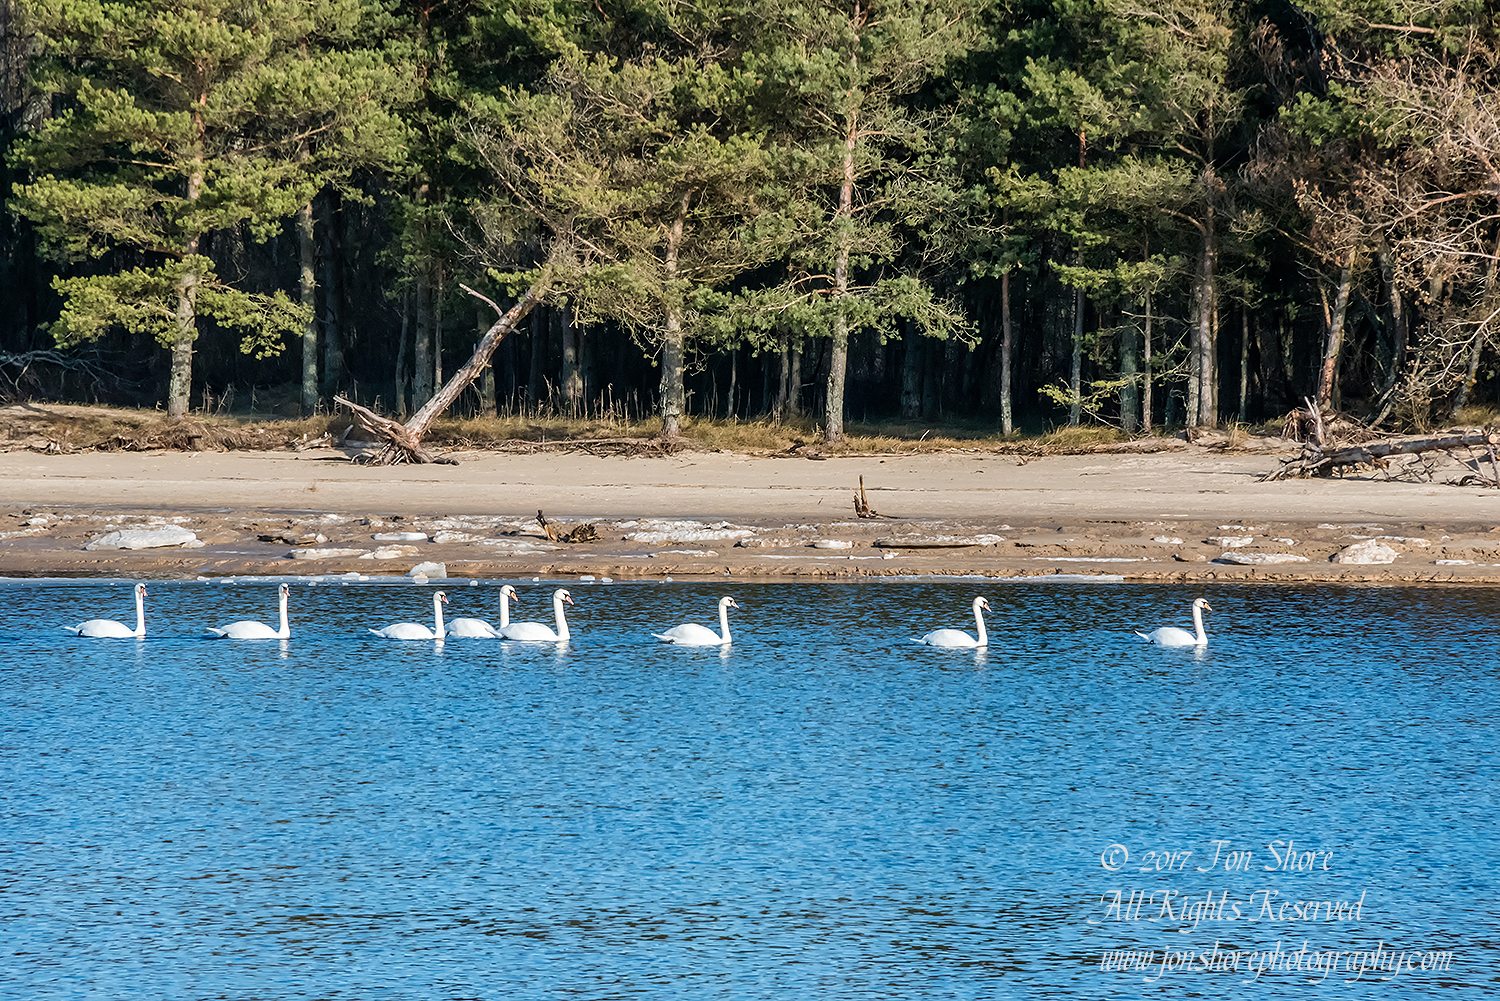 Swans Latvia Winter by Jon Shore